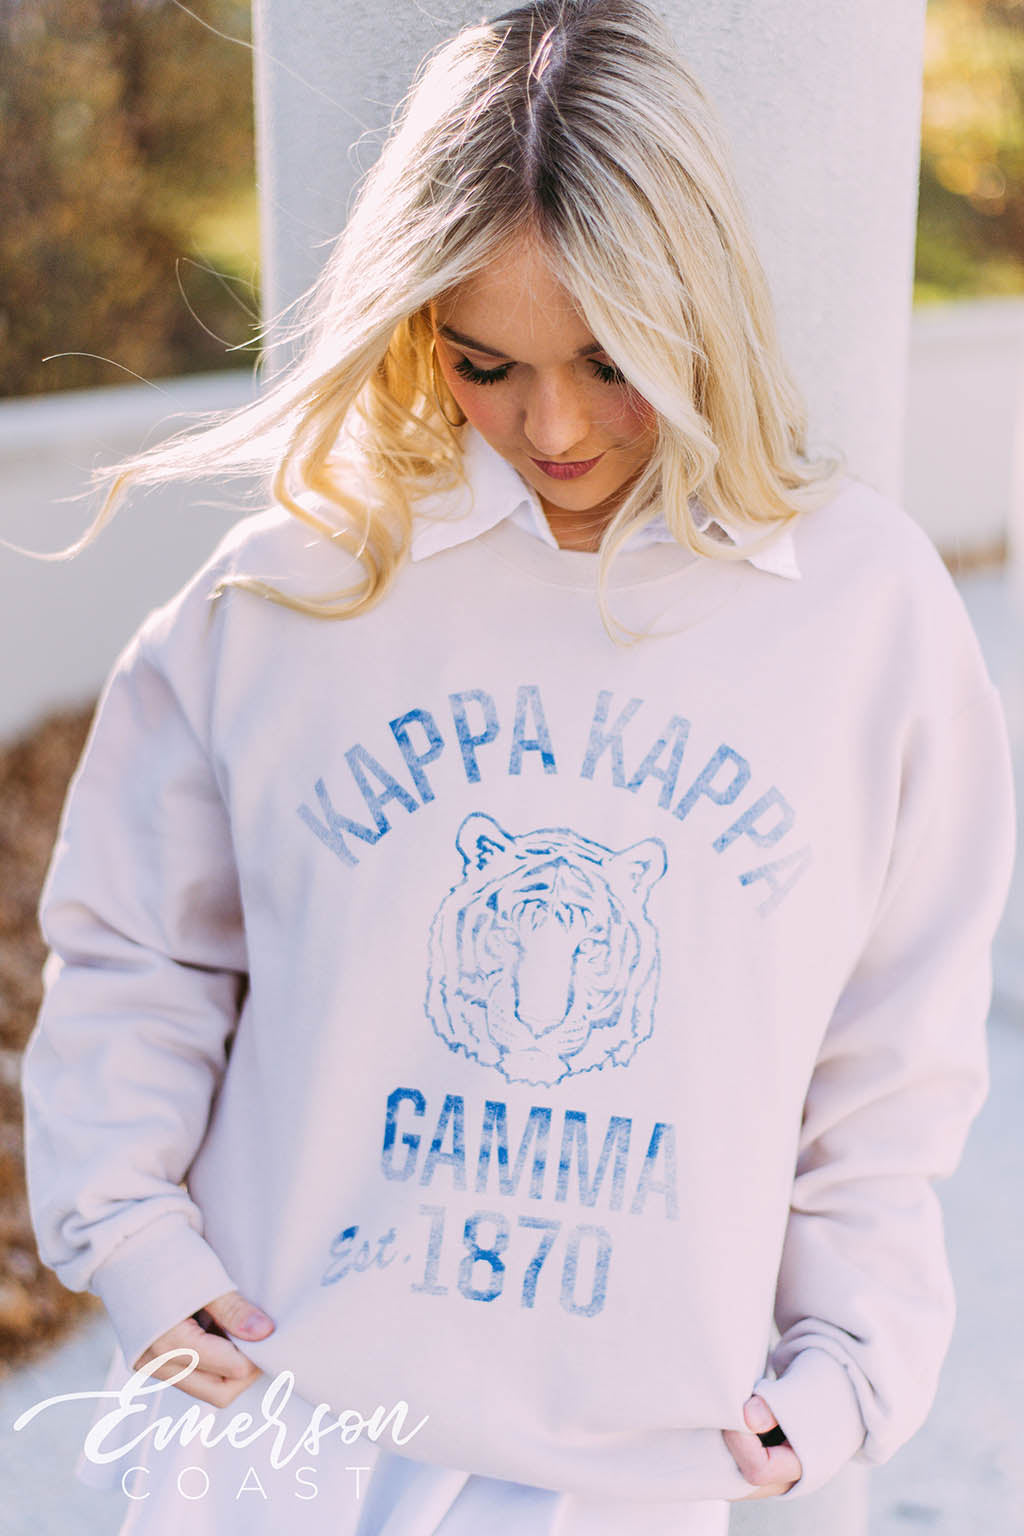 Northern Være lommeregner Kappa Kappa Gamma Vintage Collegiate Sweatshirt - Emerson Coast